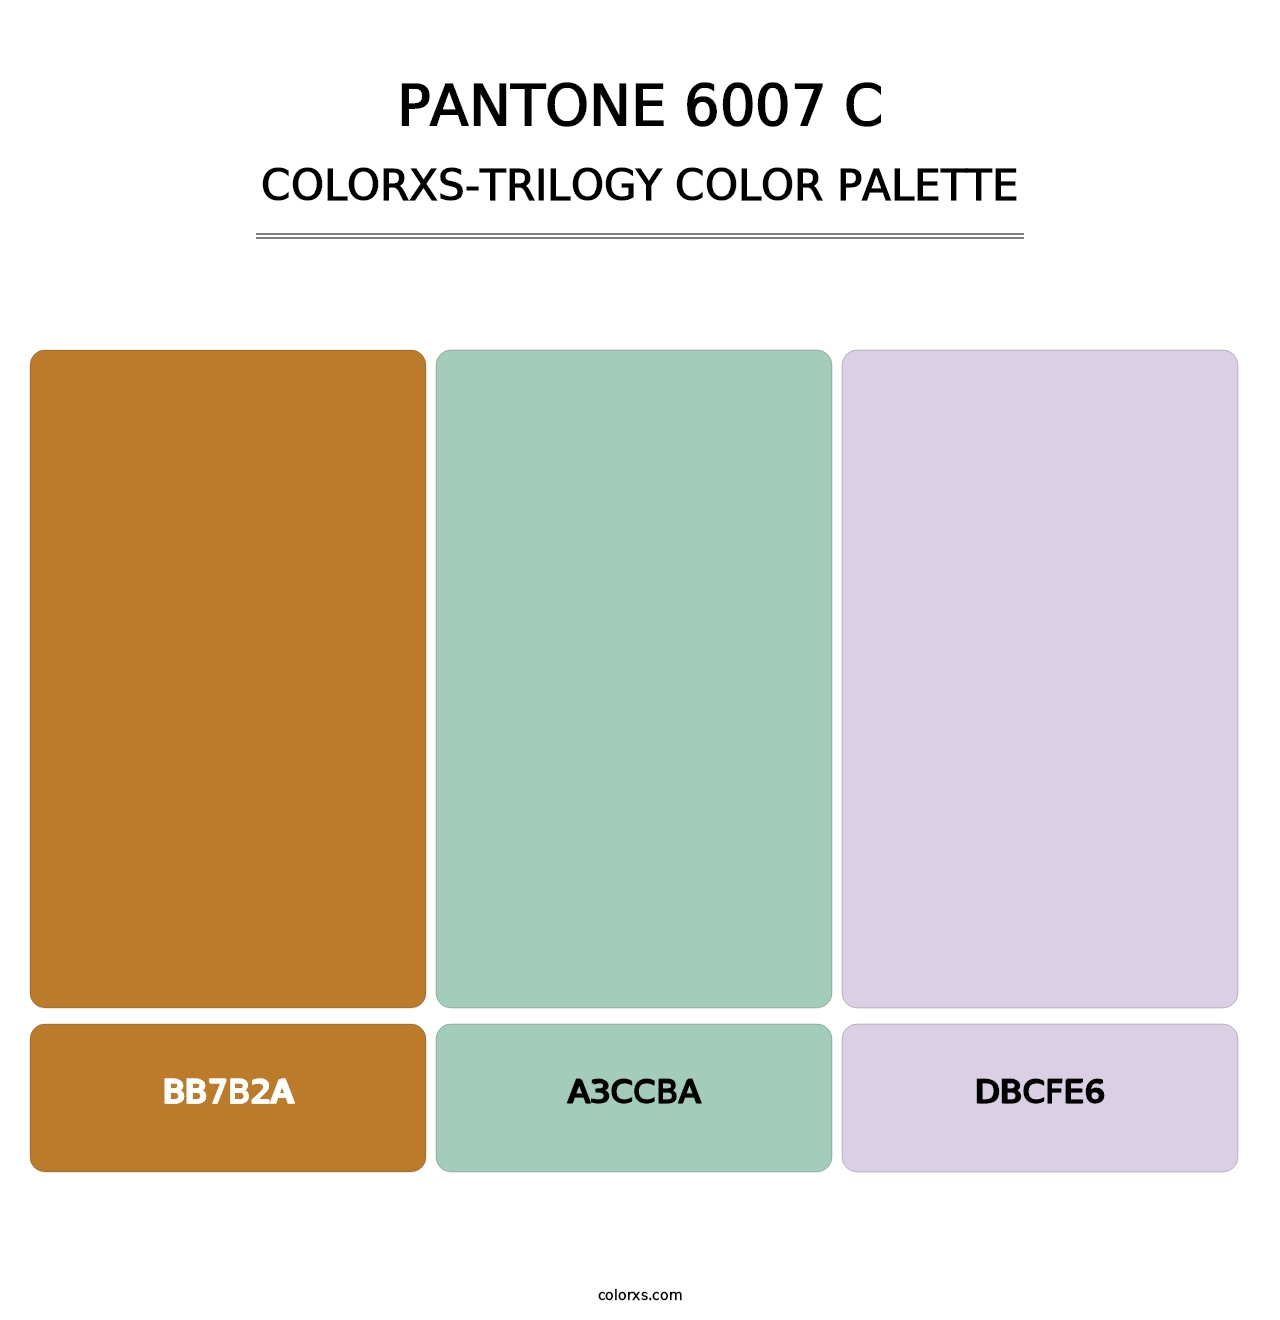 PANTONE 6007 C - Colorxs Trilogy Palette